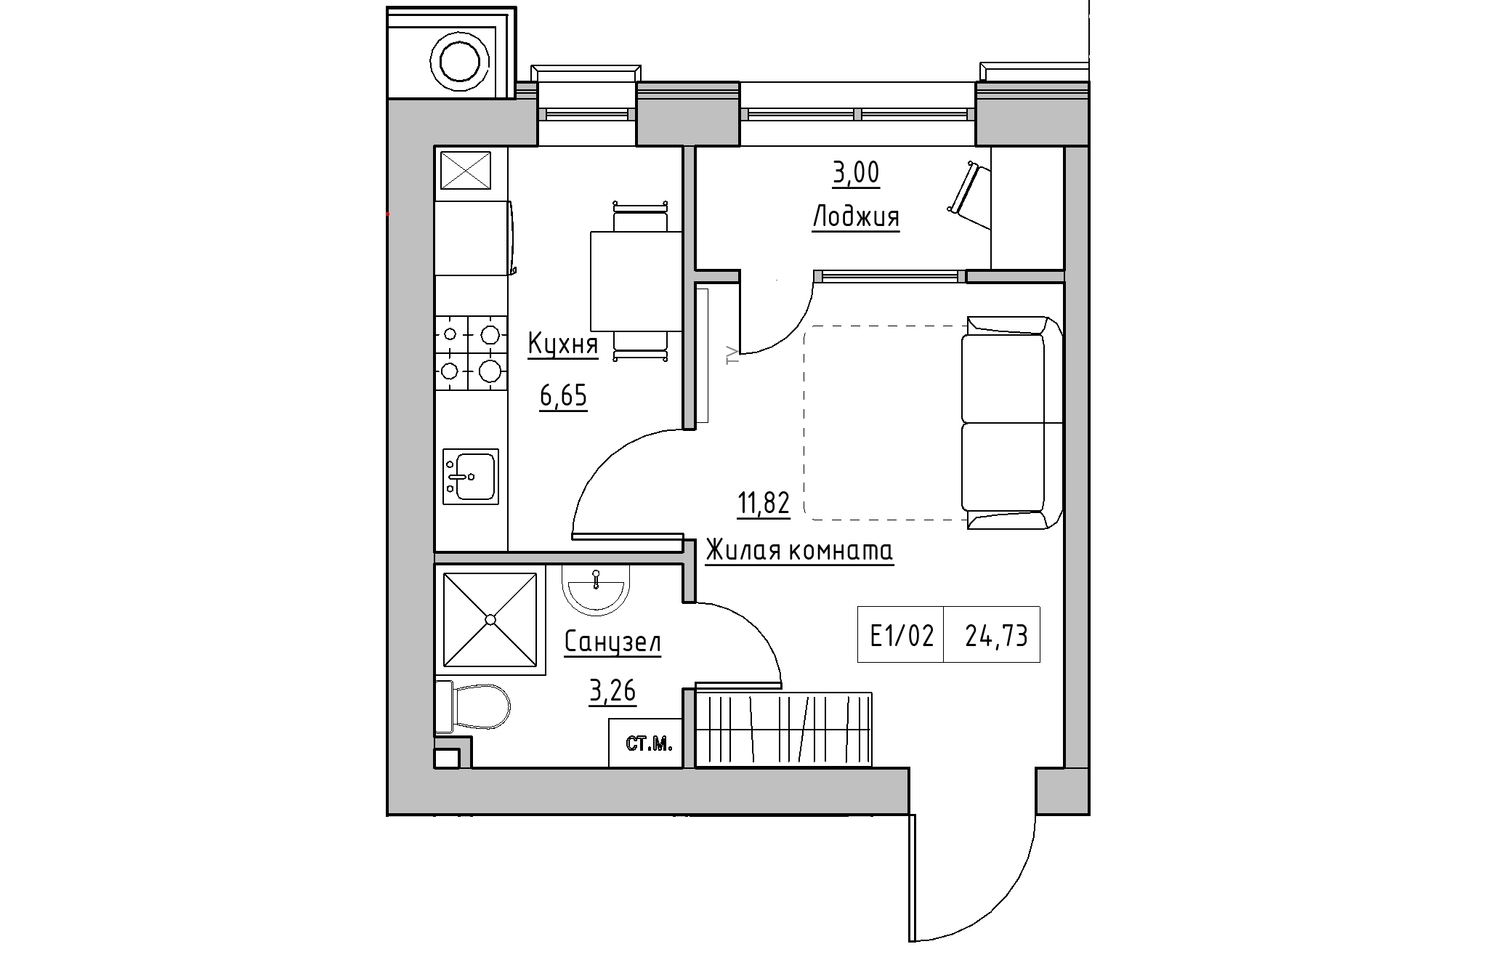 Планування 1-к квартира площею 24.73м2, KS-010-02/0004.